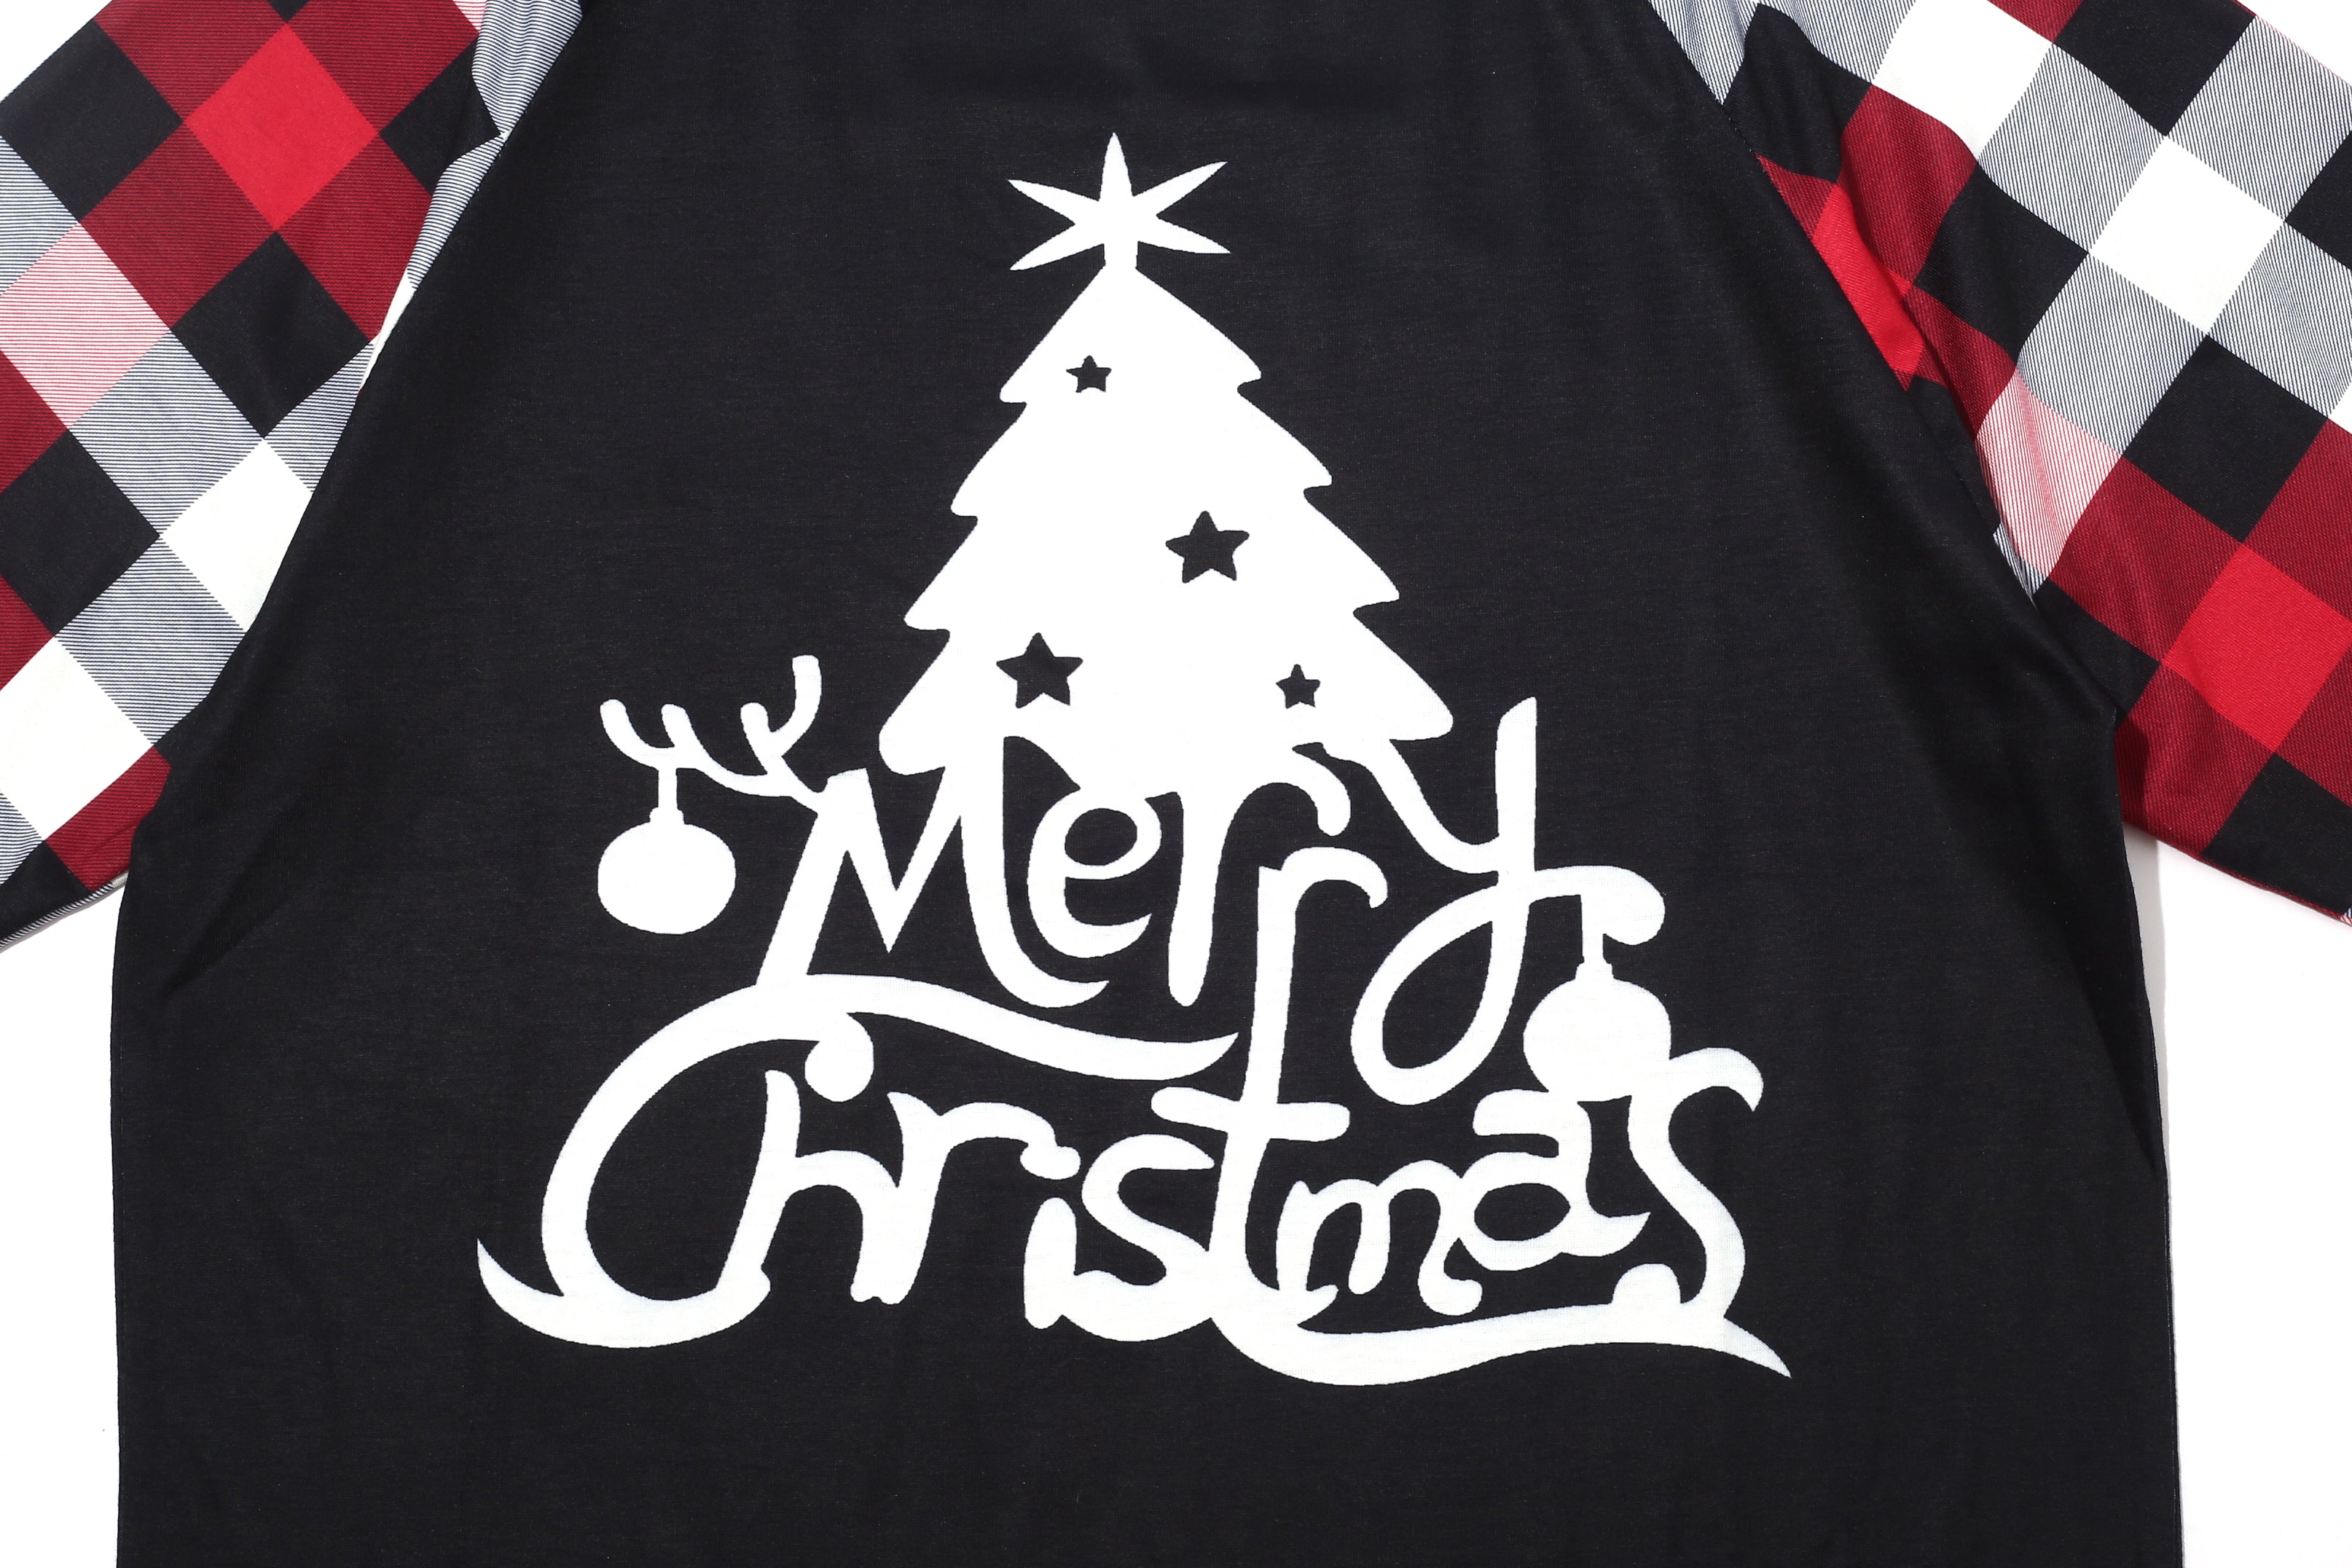 Christmas Tree Print Black Plaid Pajamas Set